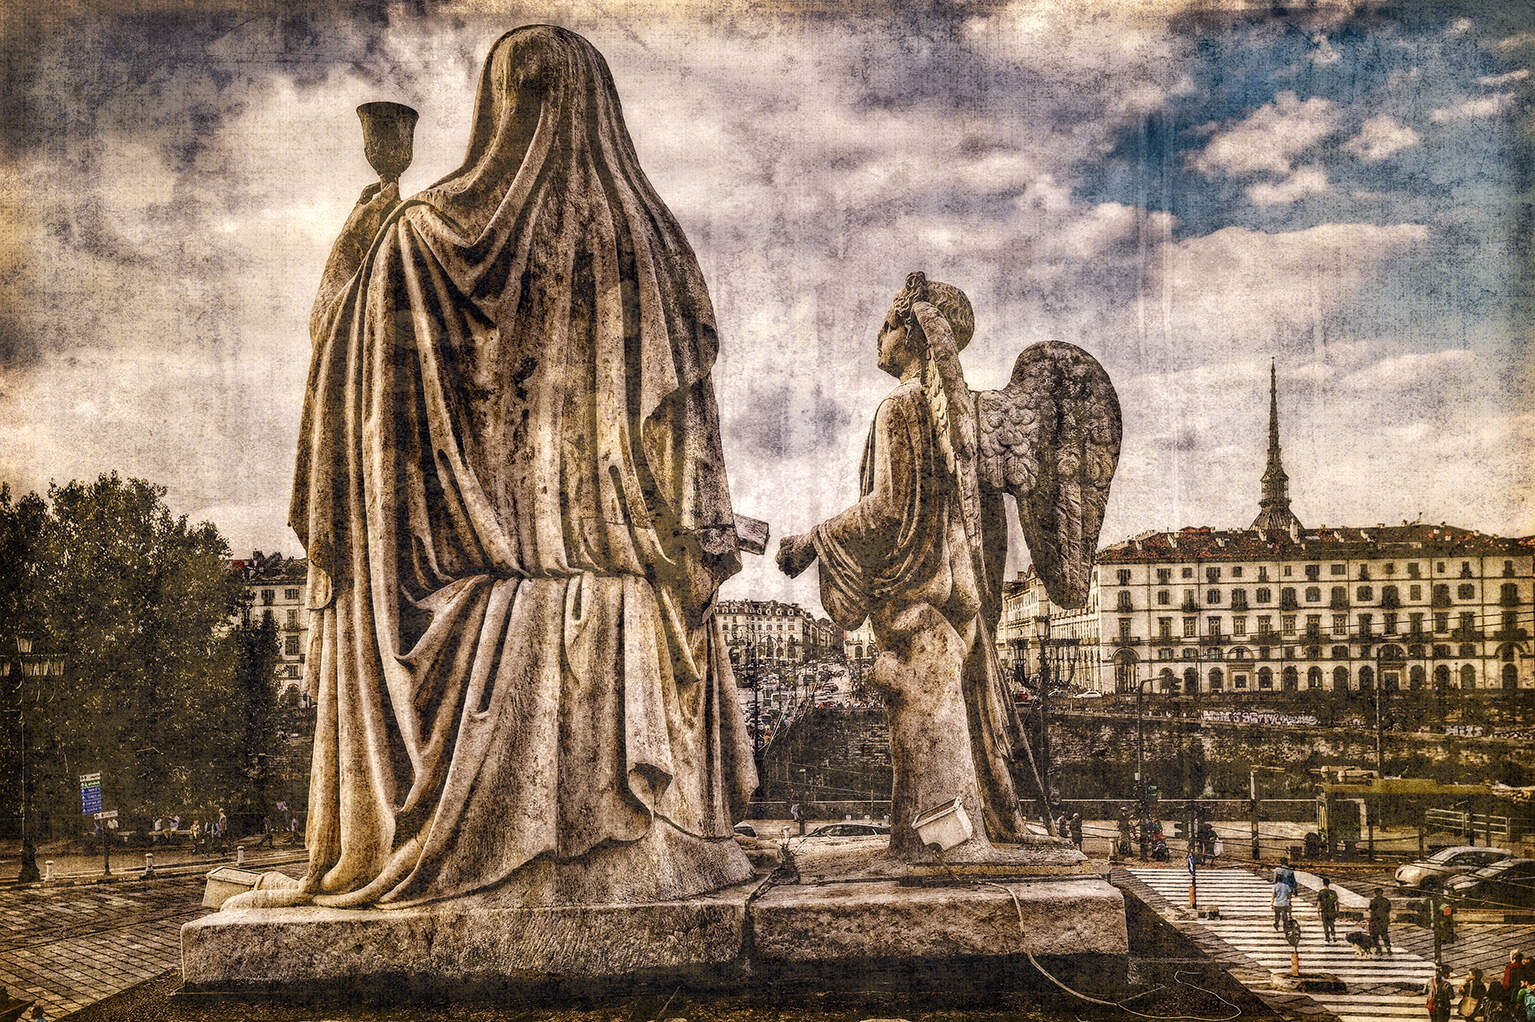 <img src=Torino Gran Madre di Dio statue della religione e della fede©Toni Spagone/realyeasystar.jpg"